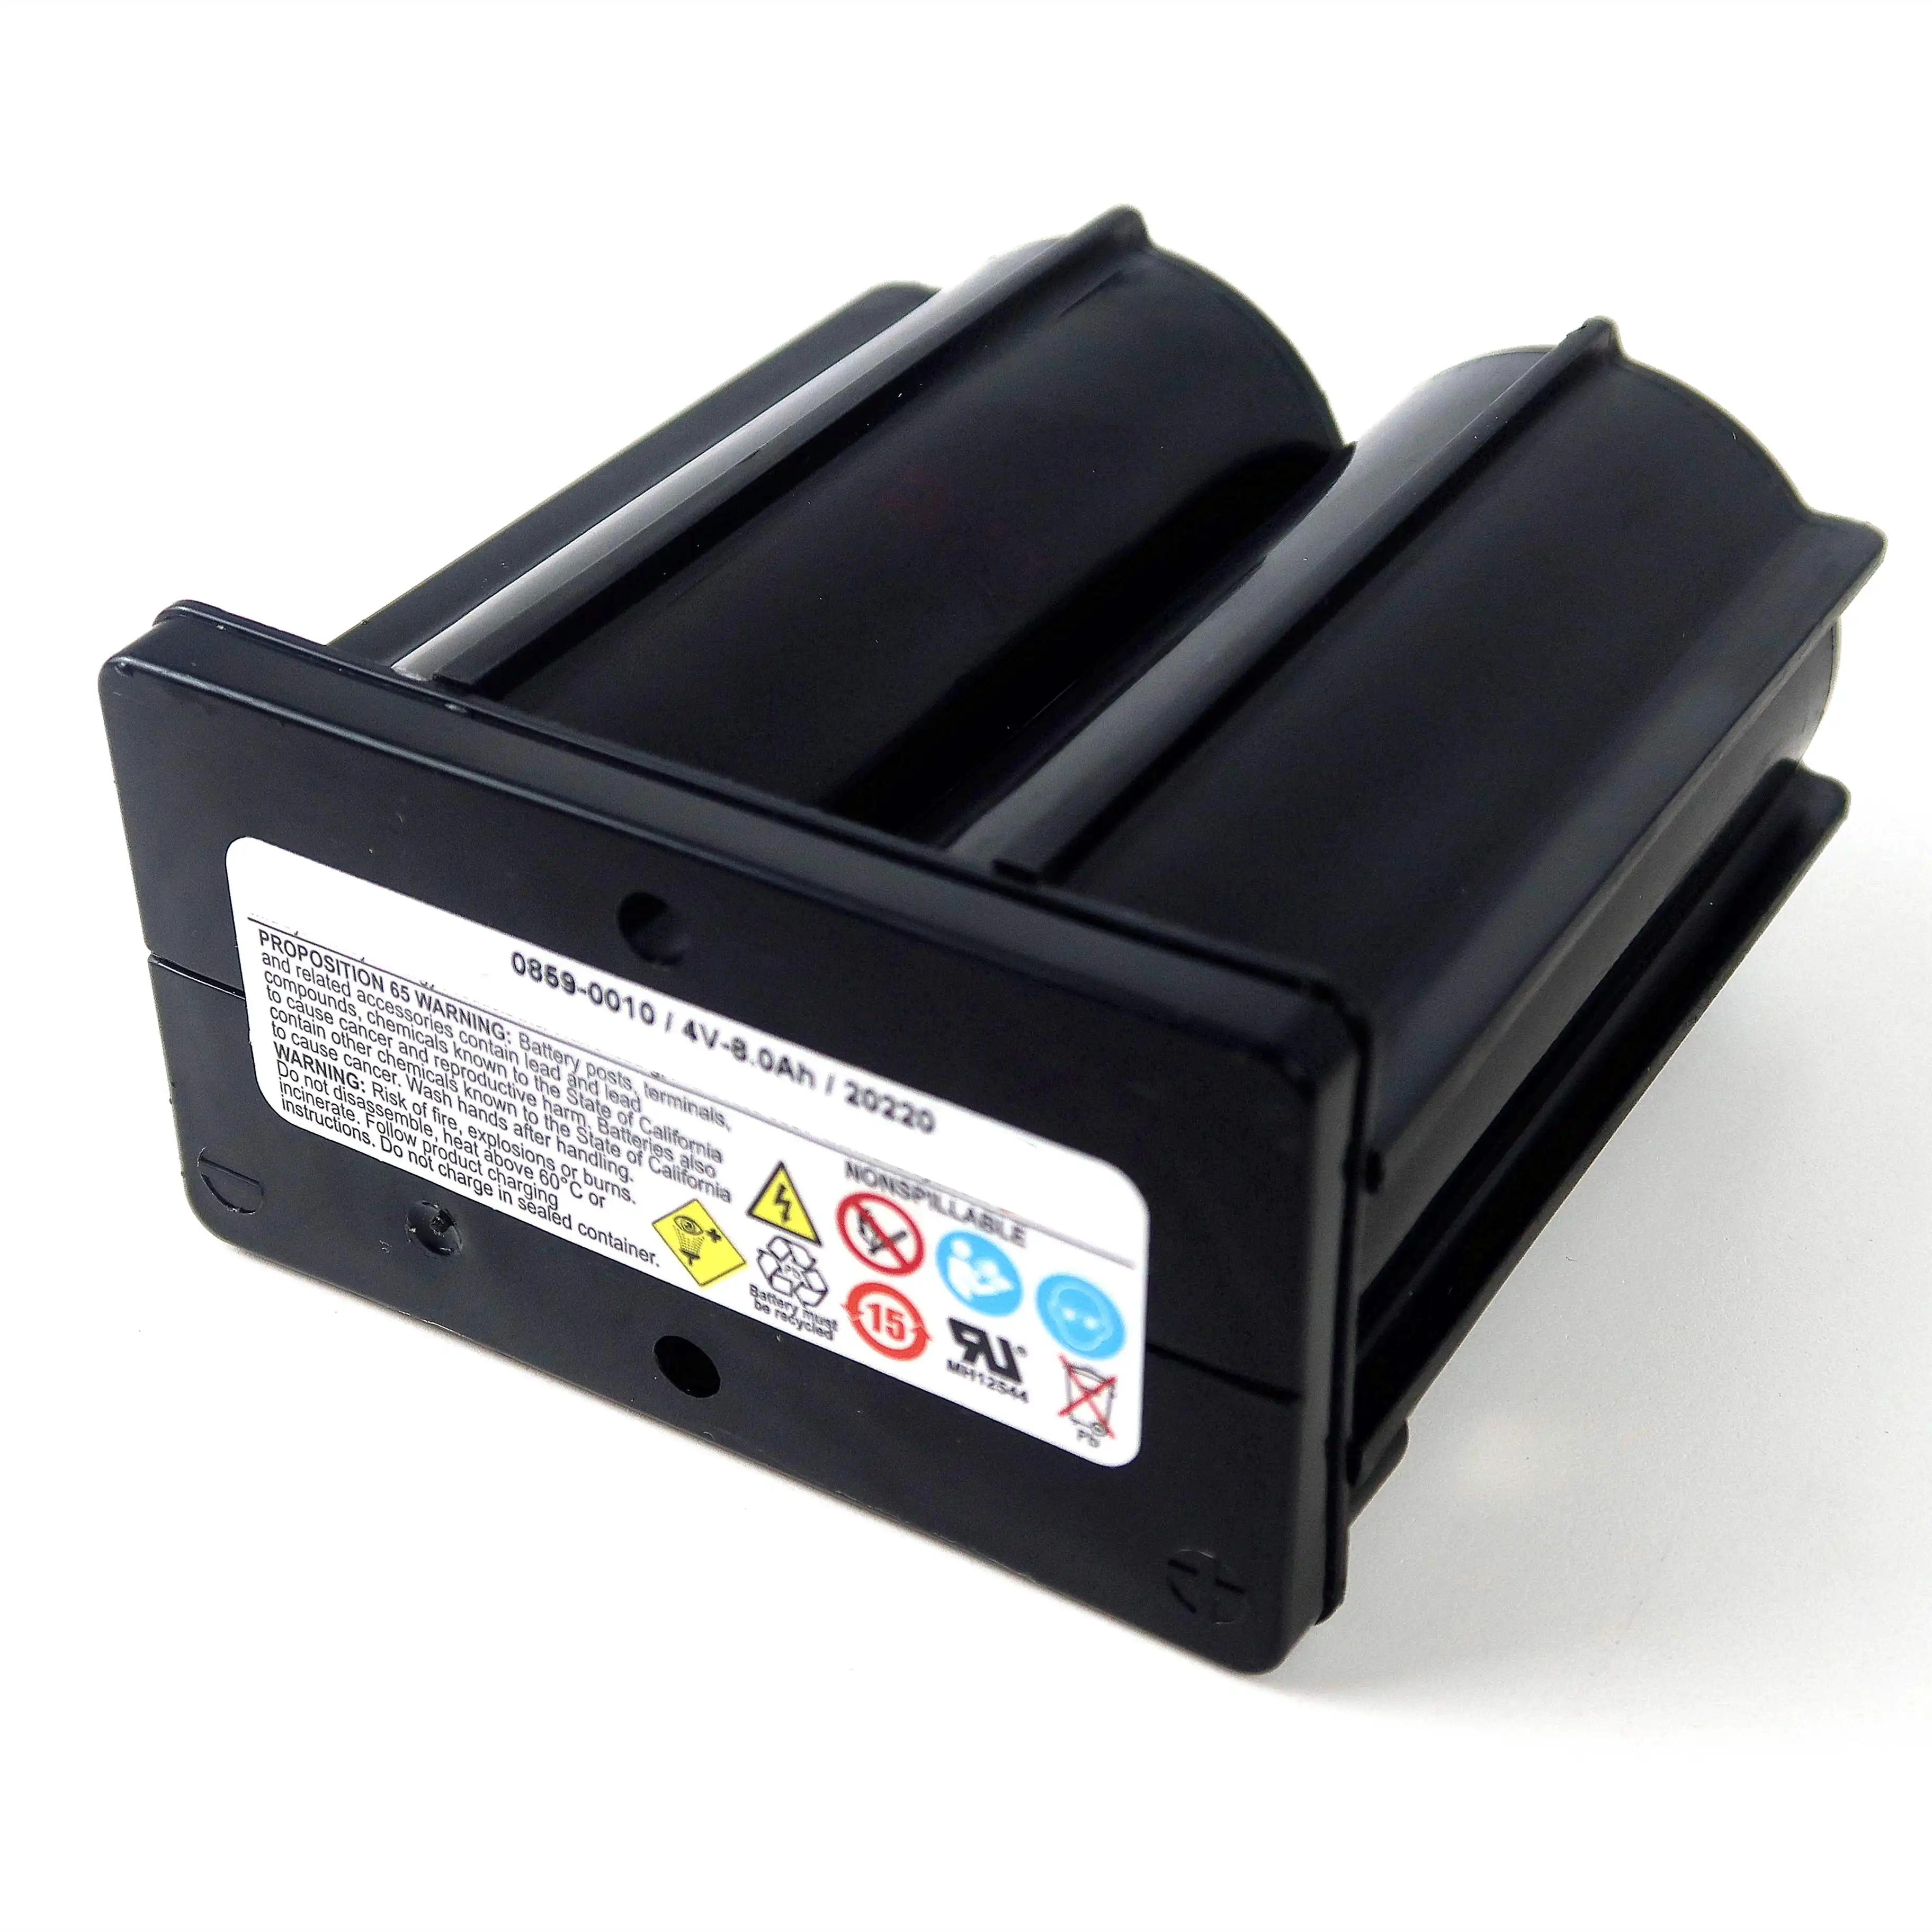 Paquete de baterías de plomo selladas para Hawker Cyclon, recambio de baterías de 4v, 8000mAh, 8Ah, 0010-0859, recargables